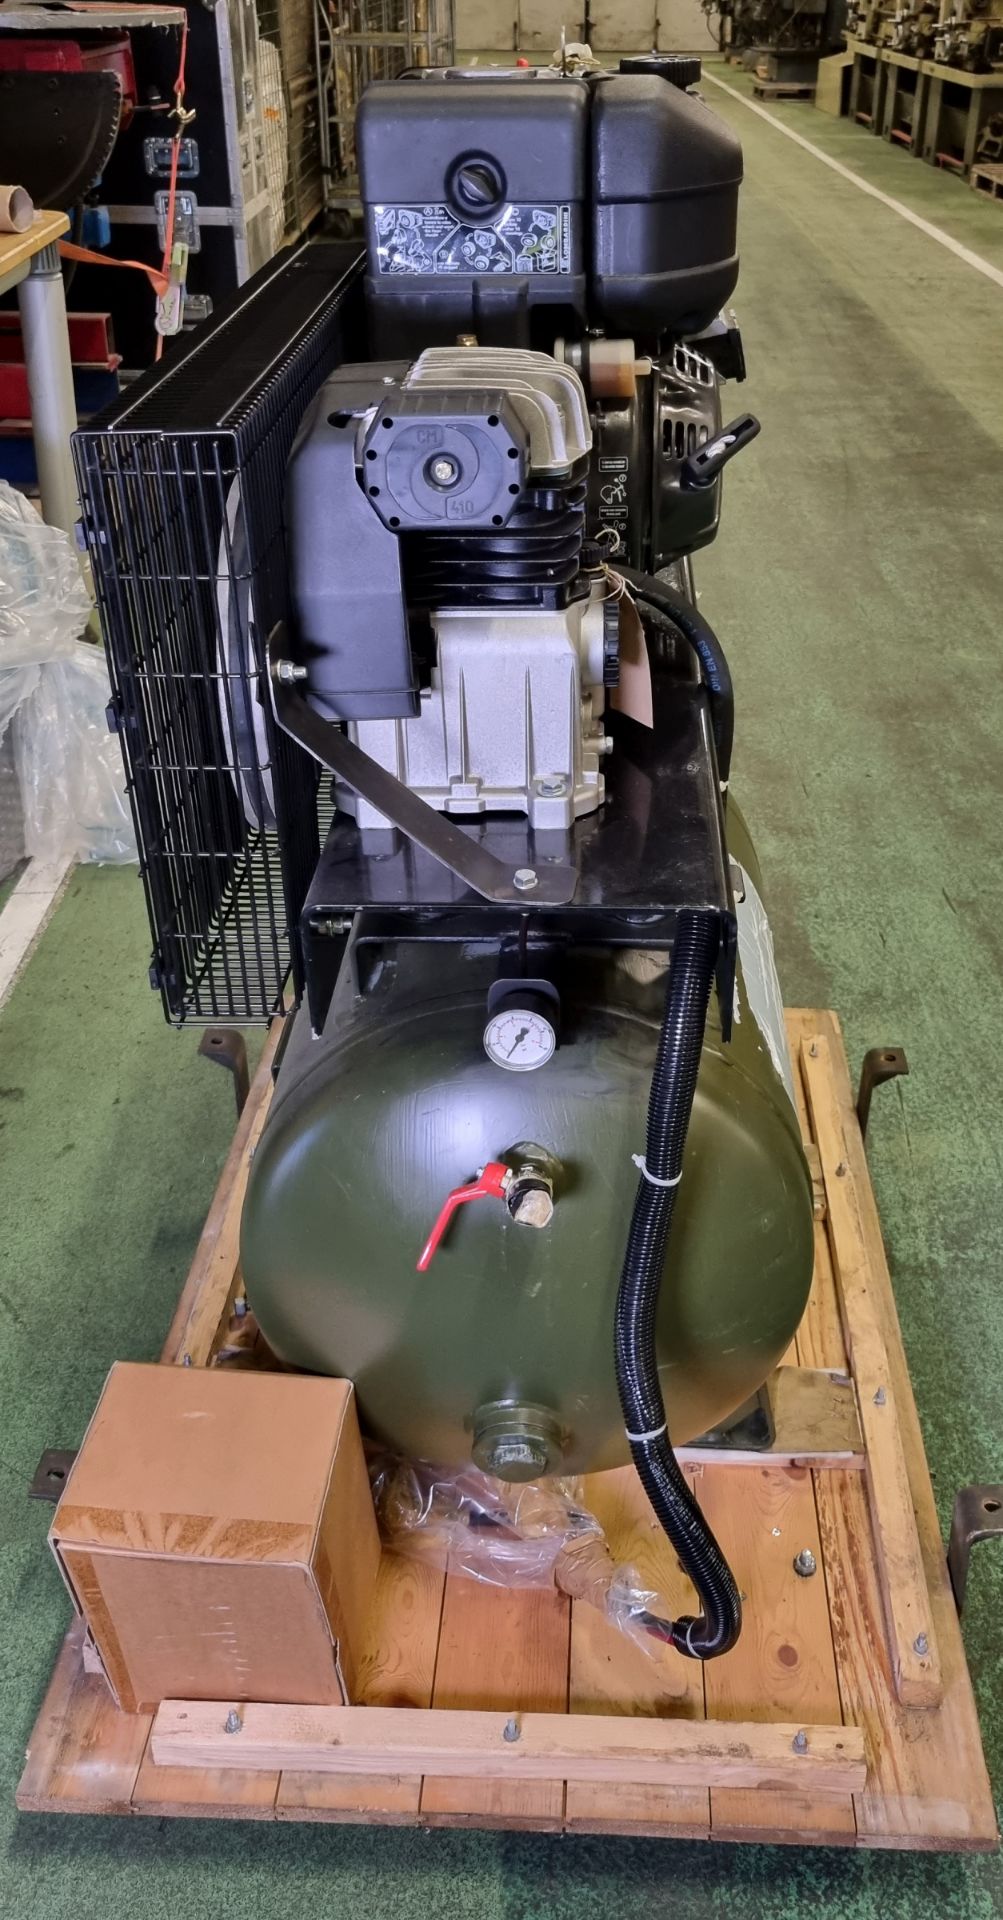 Diesel powered workshop compressor - Lombardini 15 LD 315 diesel engine - Serial No. 5352814 - Image 7 of 15